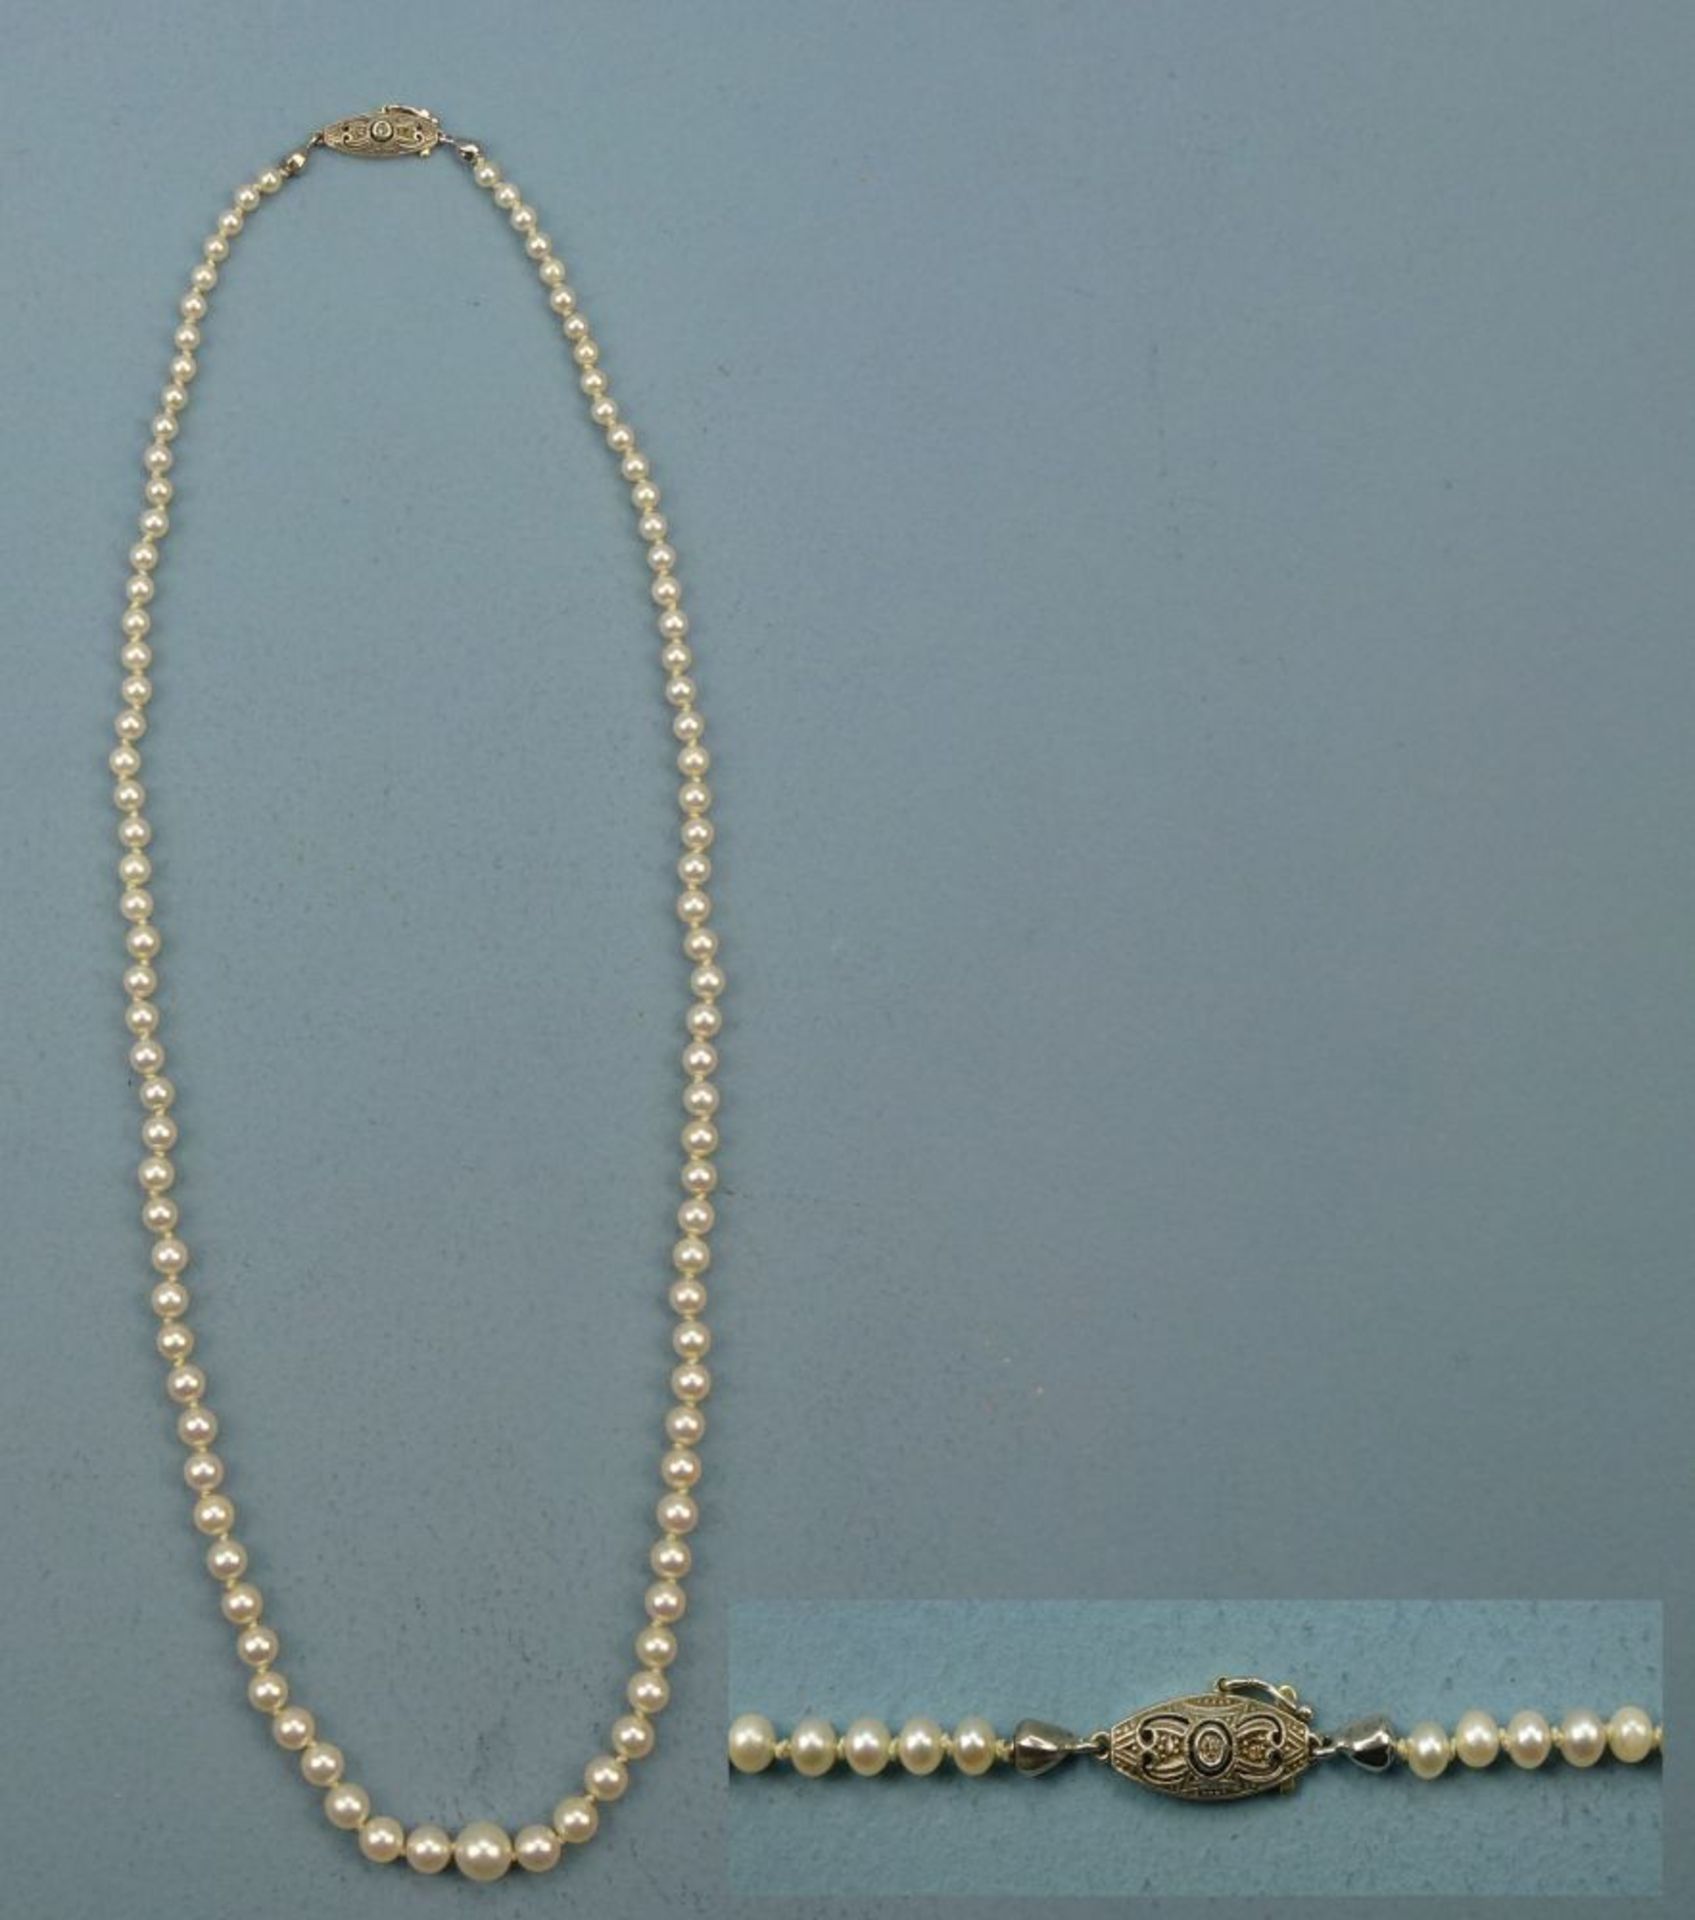 Perlenkette mit 585er Weiß-/GelbgoldschließeAkoyazuchtperlen, verlaufend Dm von 3,4-7,4 mm, Schließe